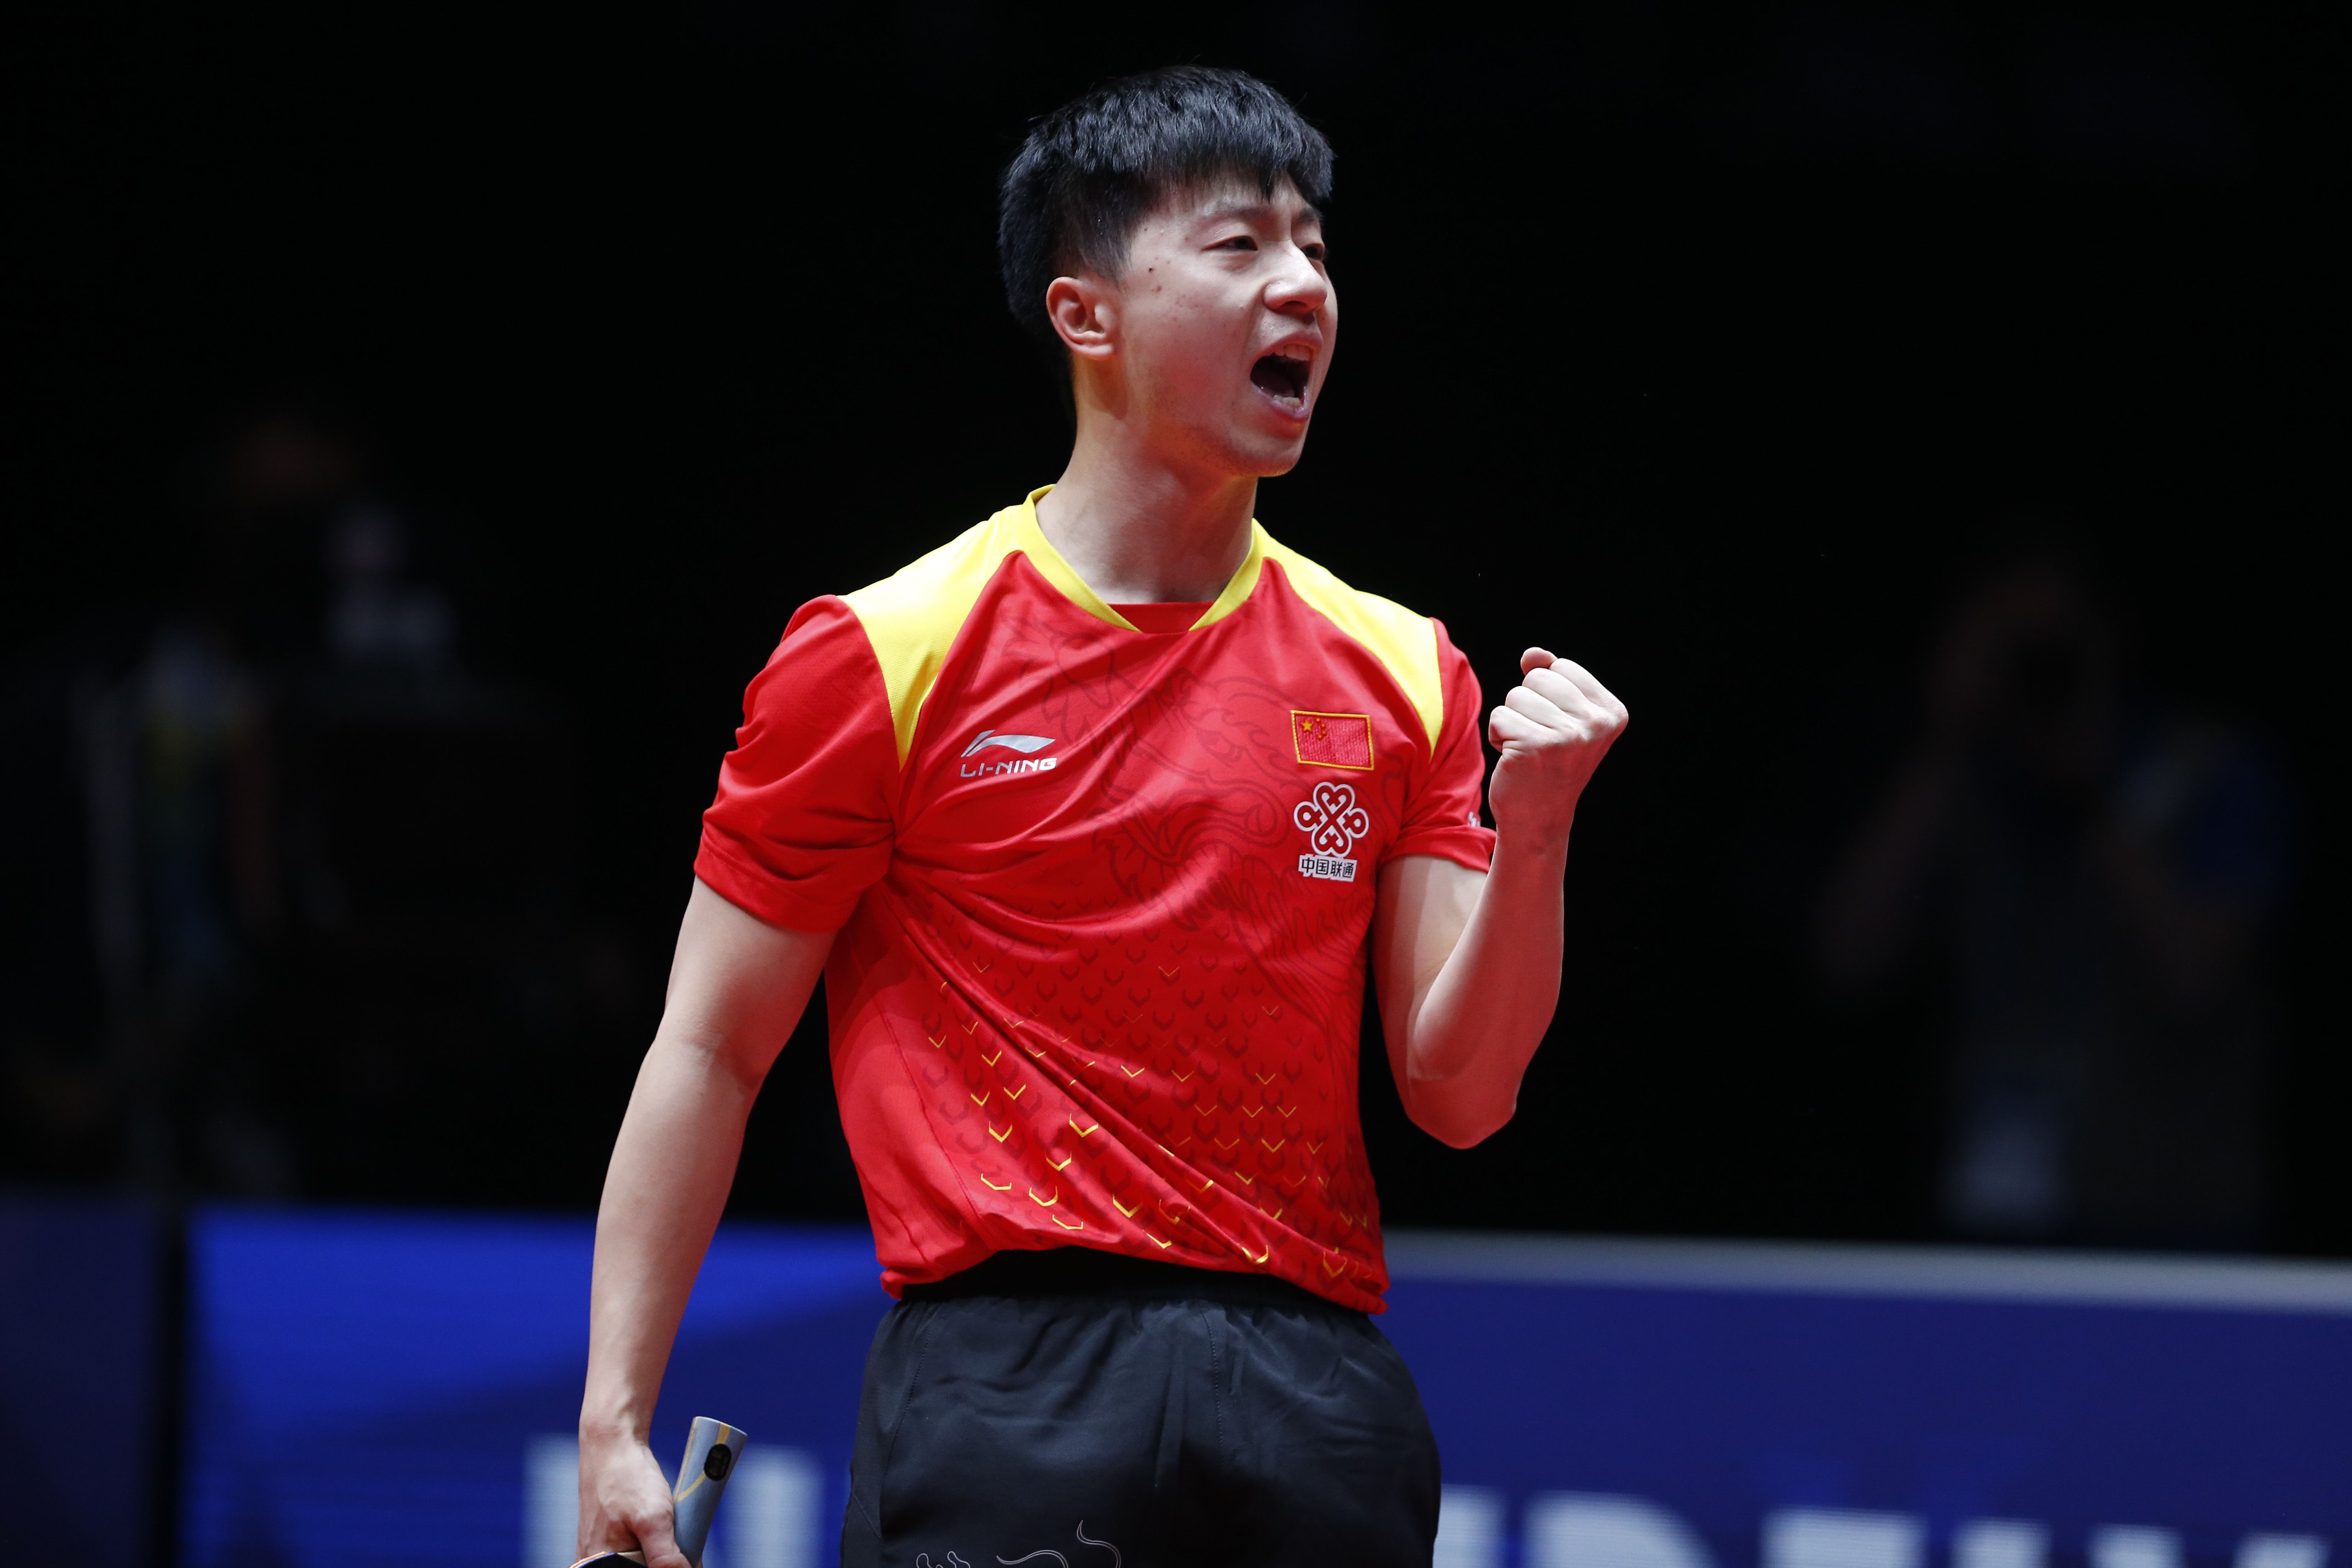 年乒乓球世界团体锦标赛男团决赛中,中国队以3比0战胜德国队,夺得冠军